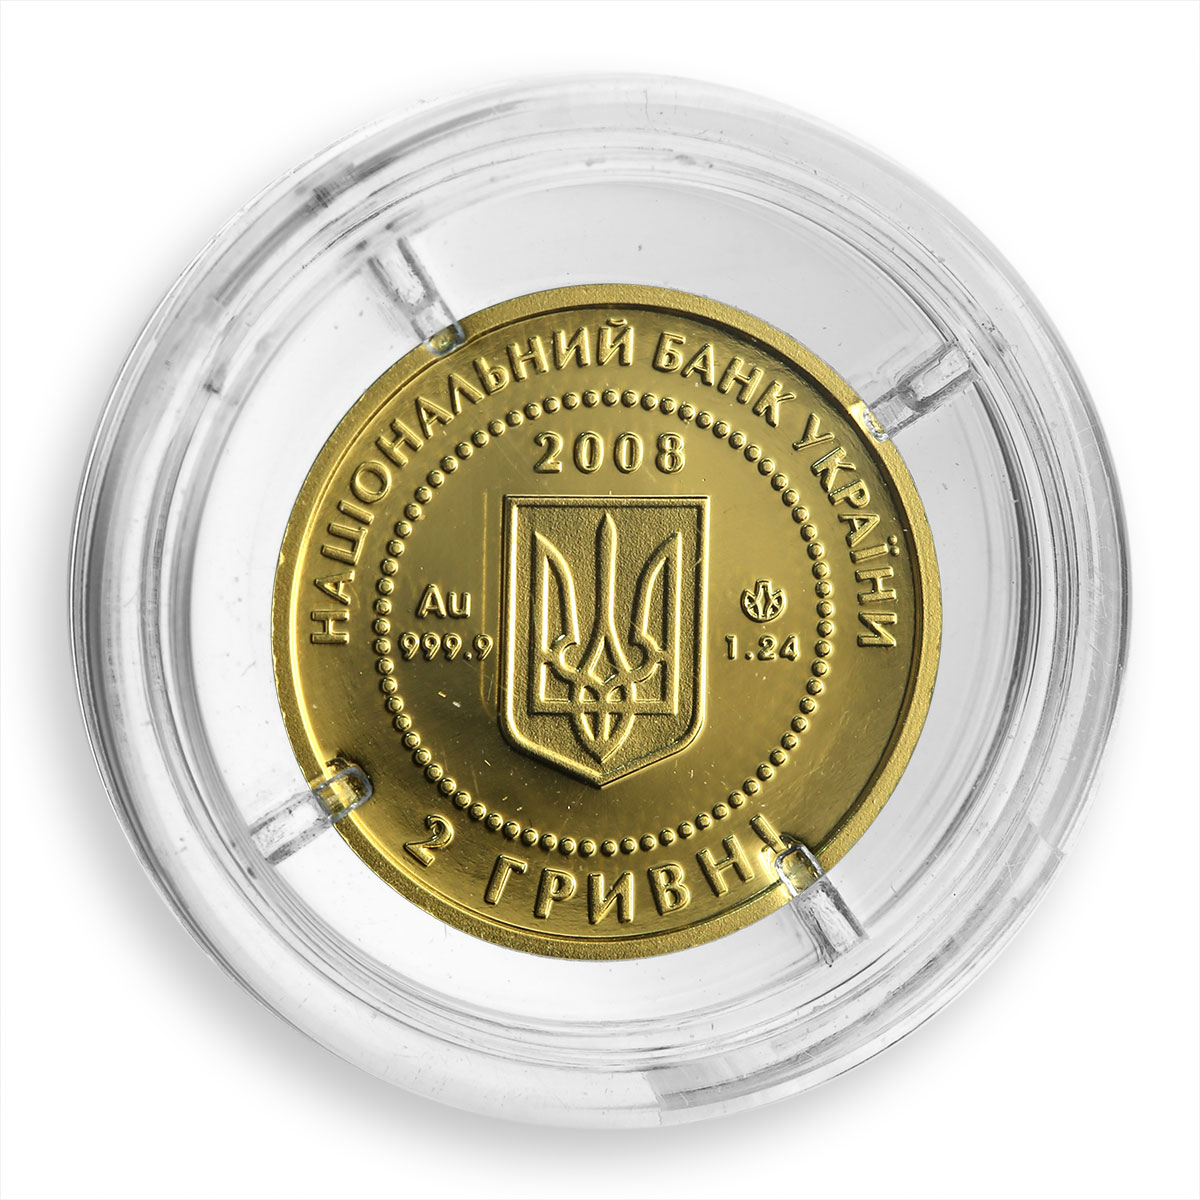 Ukraine 2 hryvnas Skythian Gold The Goddess Api 6th century gold coin 2008